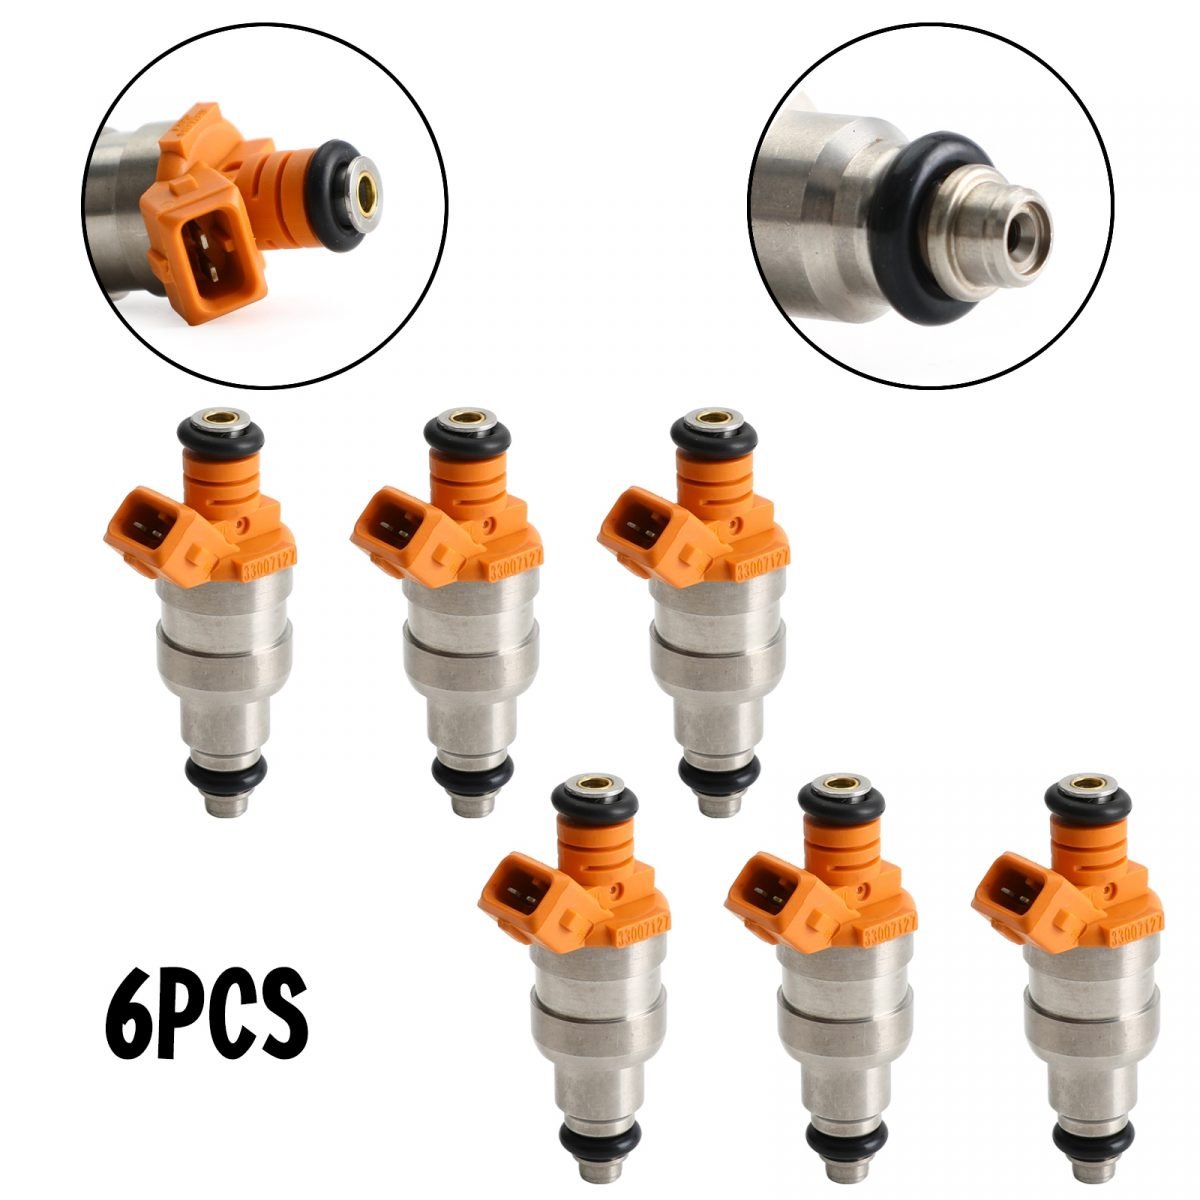 6pcs Fuel Injectors 33007127 fits For Wrangler | Fuel Injector